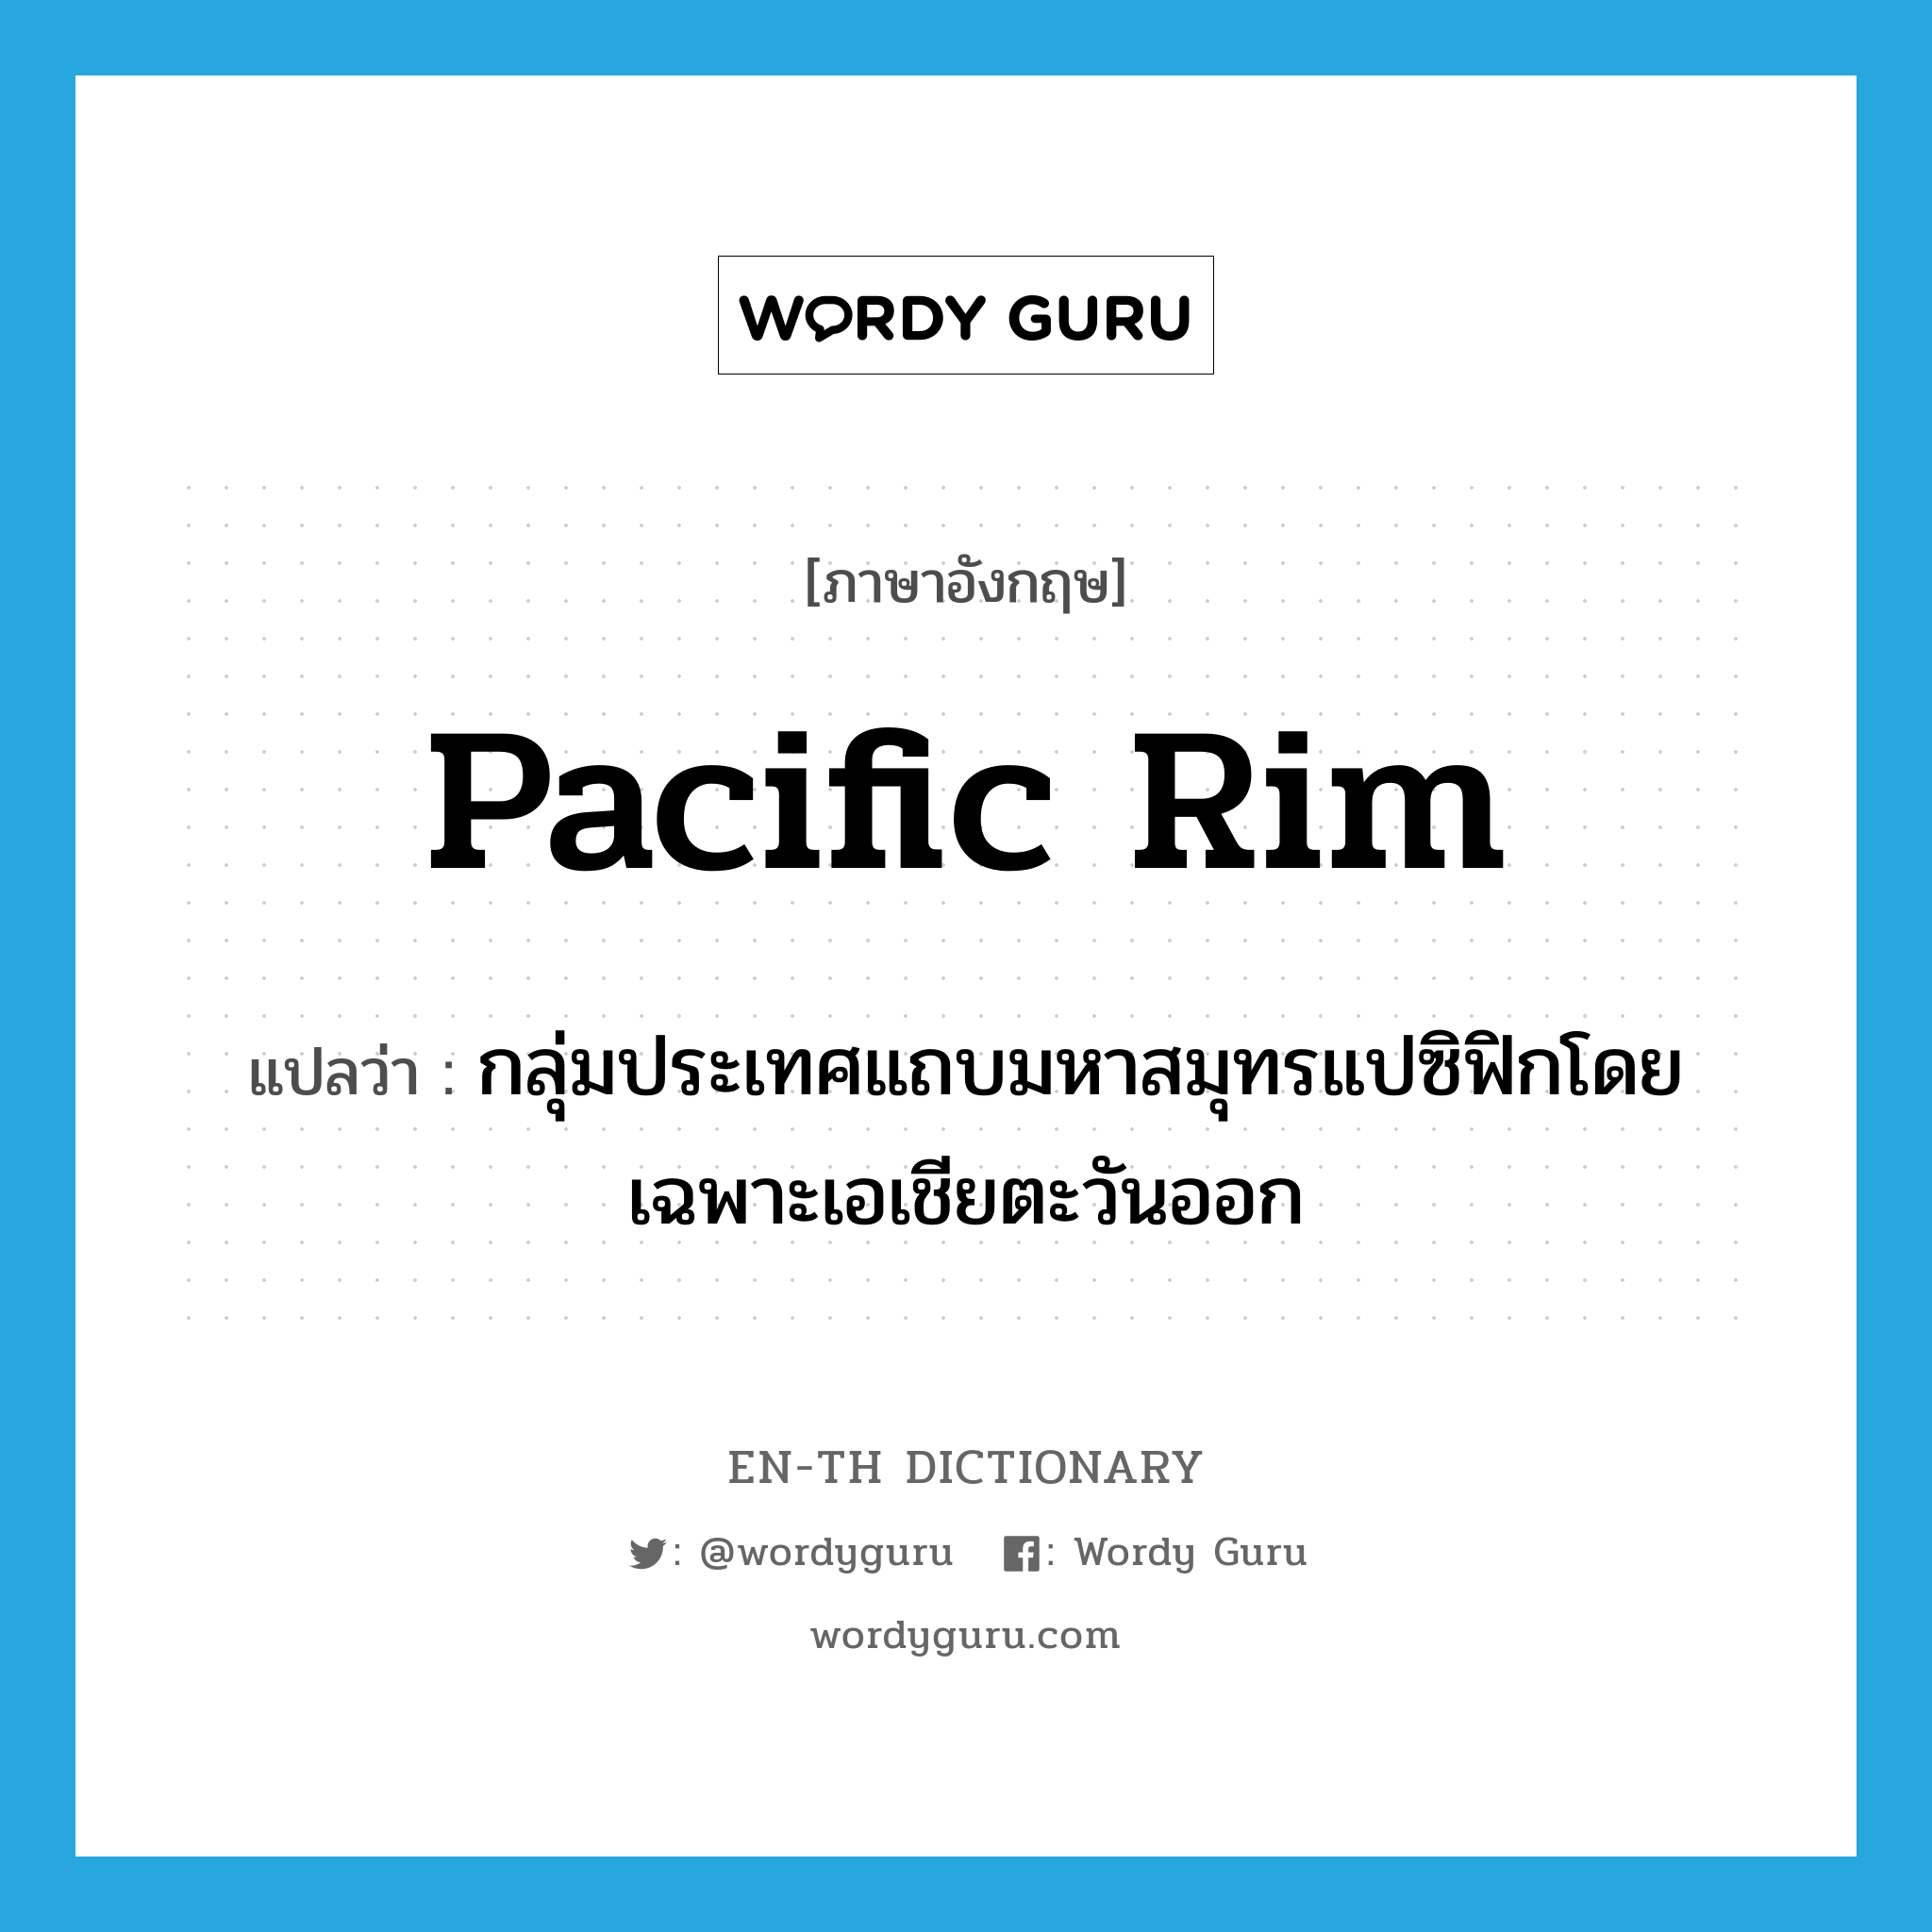 Pacific Rim แปลว่า?, คำศัพท์ภาษาอังกฤษ Pacific Rim แปลว่า กลุ่มประเทศแถบมหาสมุทรแปซิฟิกโดยเฉพาะเอเชียตะวันออก ประเภท N หมวด N